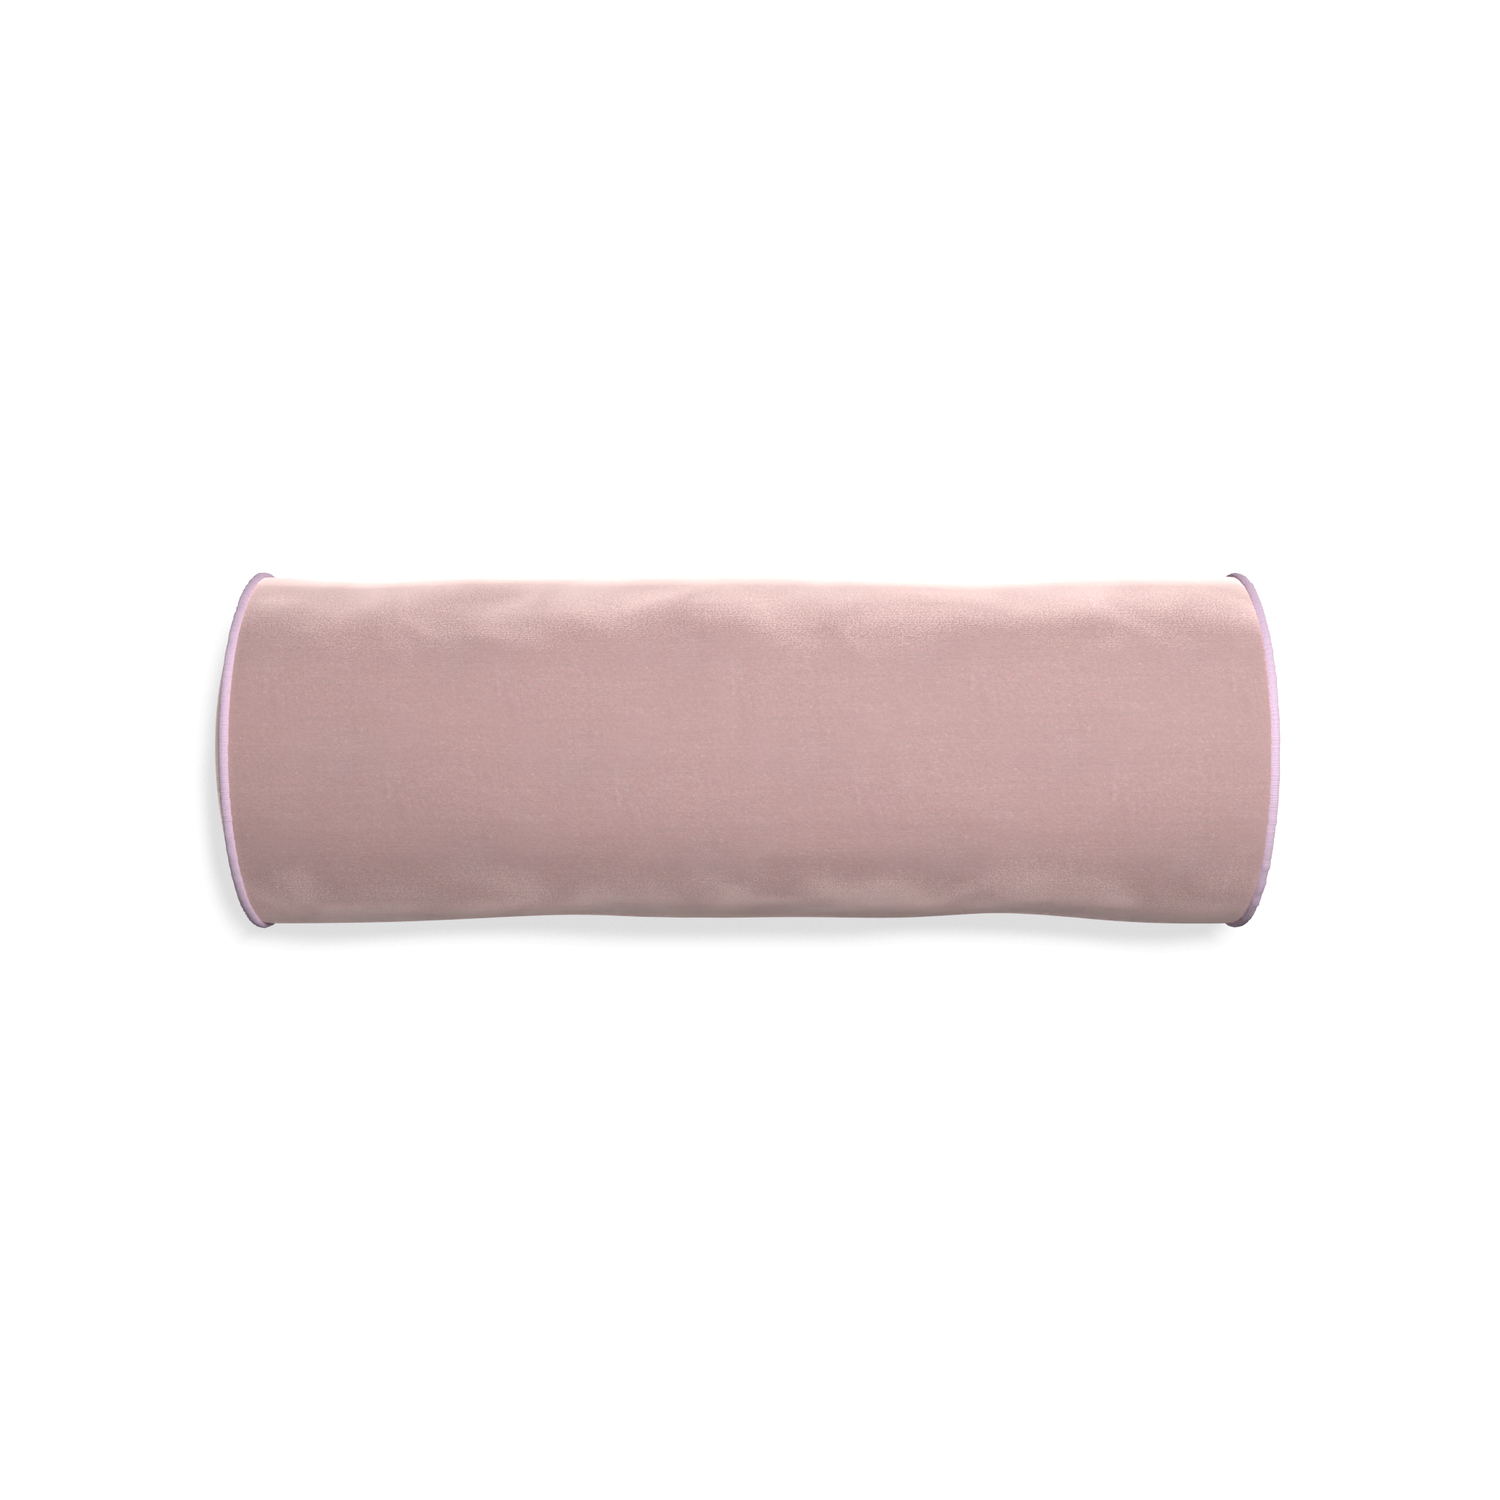 Bolster mauve velvet custom pillow with l piping on white background